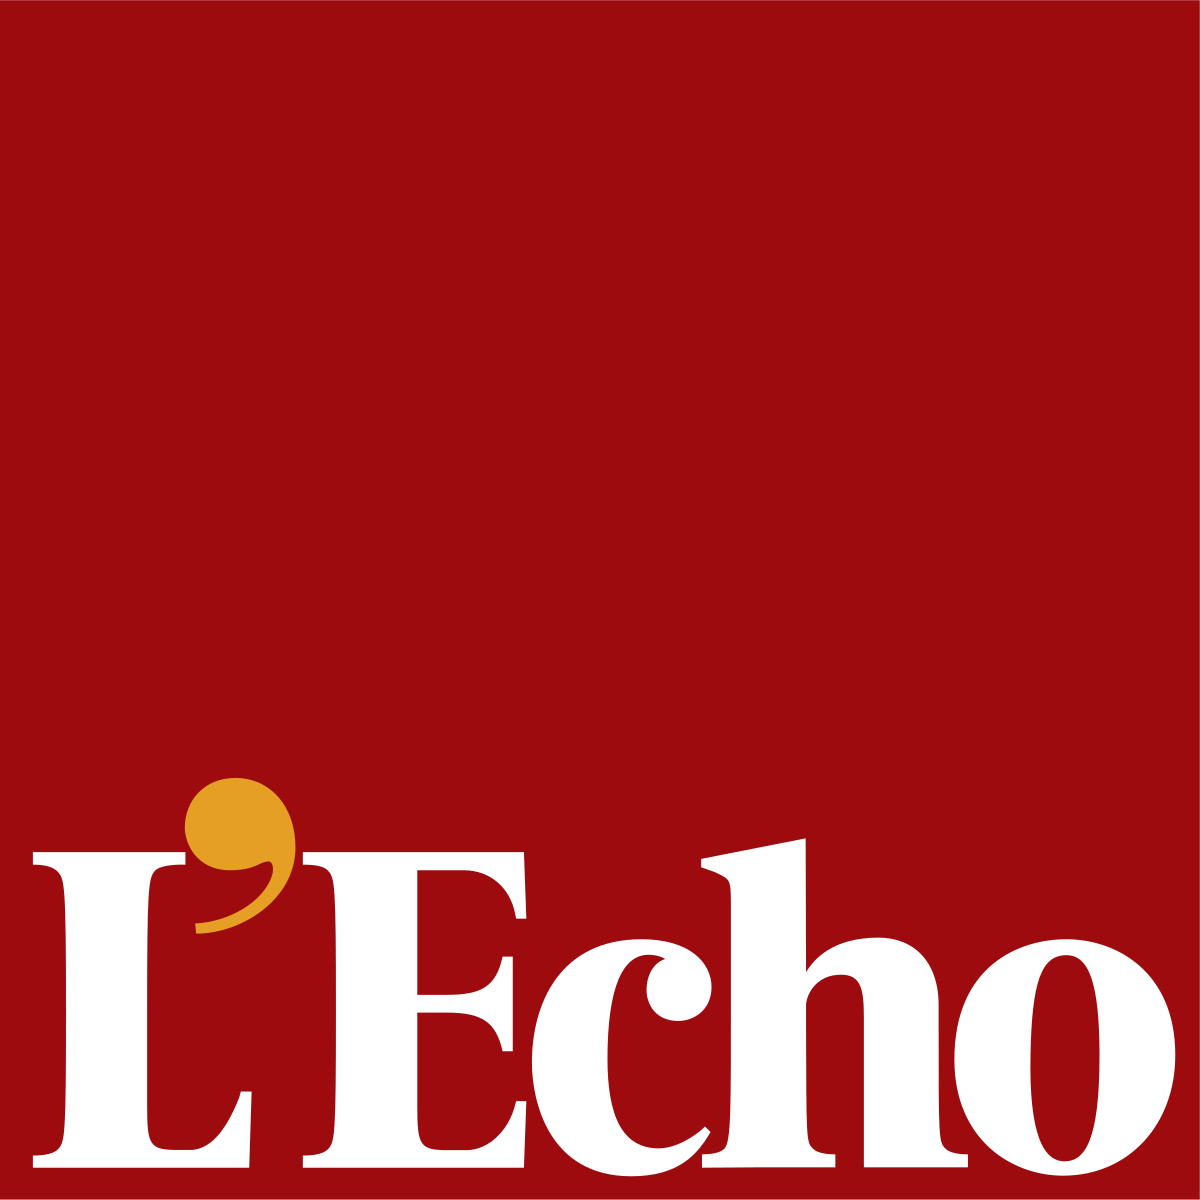 Article L'Echo